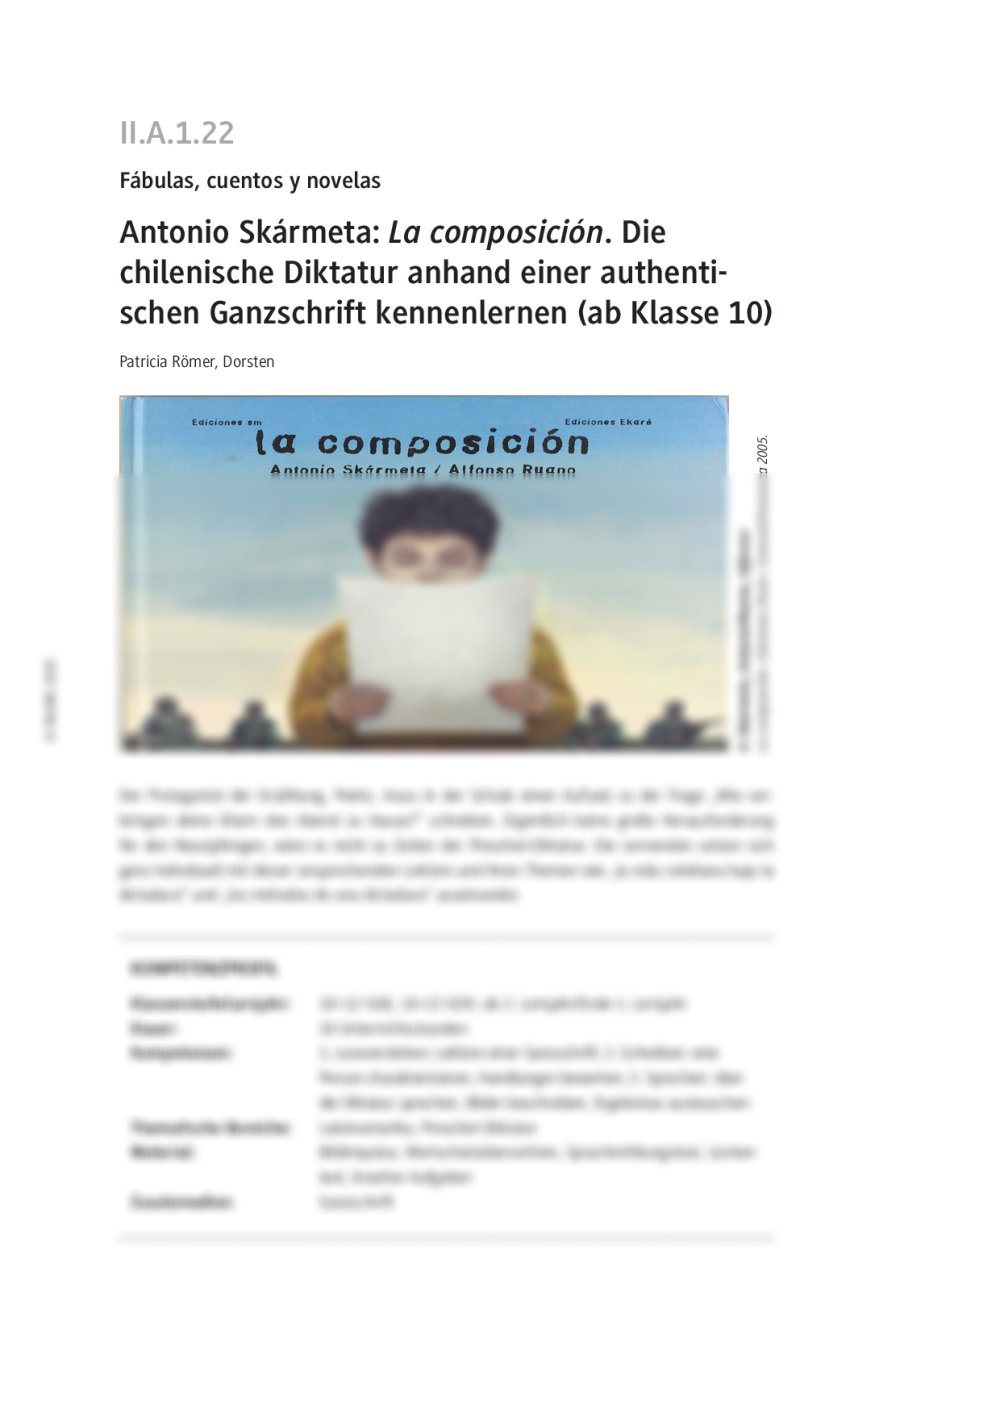 Antonio Skármeta: La composición - Seite 1